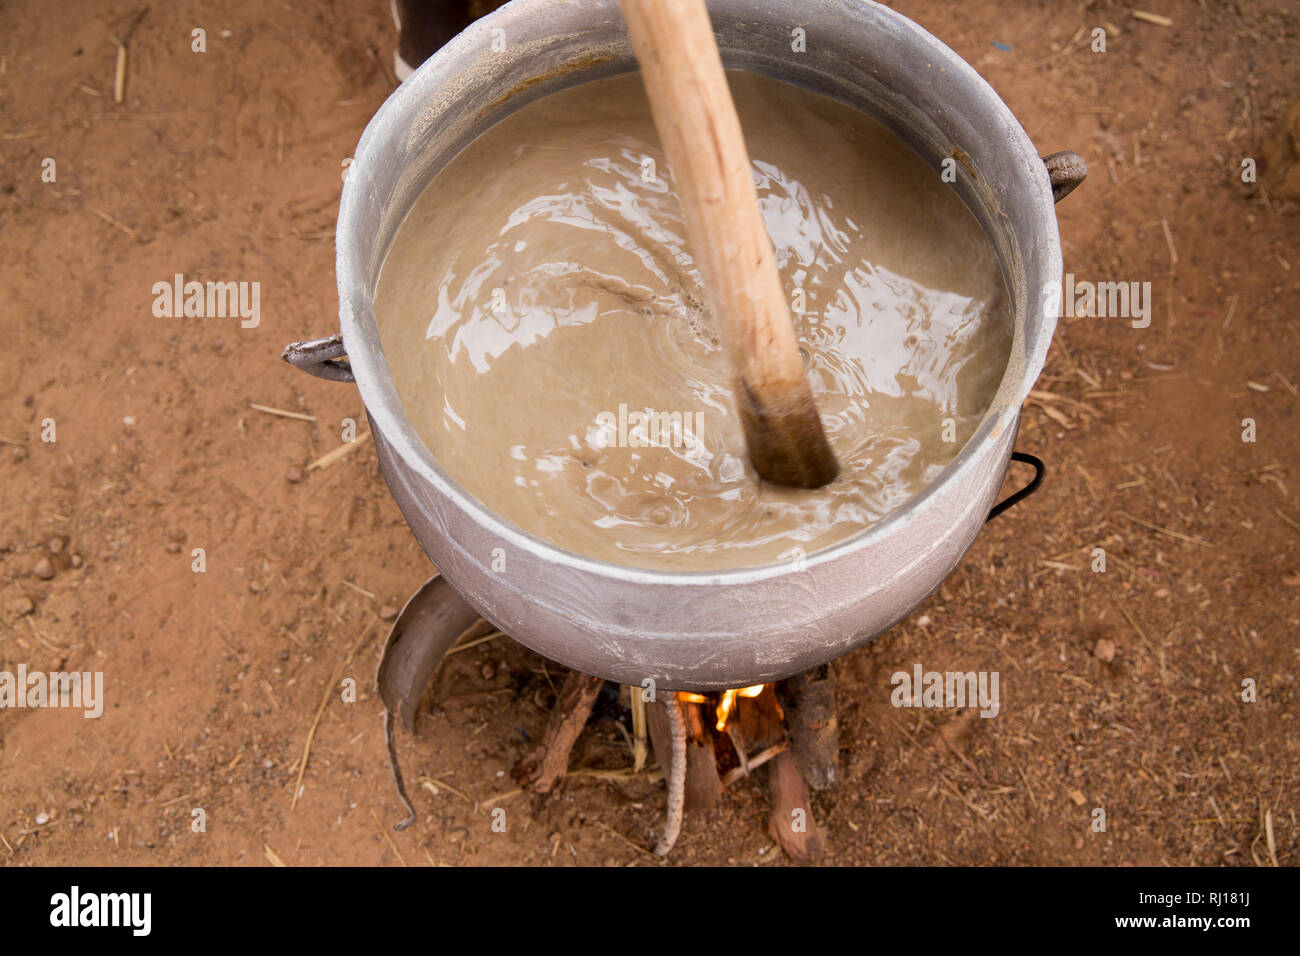 Il villaggio di Samba, Provincia Yako, Burkina Faso. CVN dimostrazione di preparazione di porridge e campagne di sensibilizzazione per le mamme sul bambino nutrizione problemi. Foto Stock